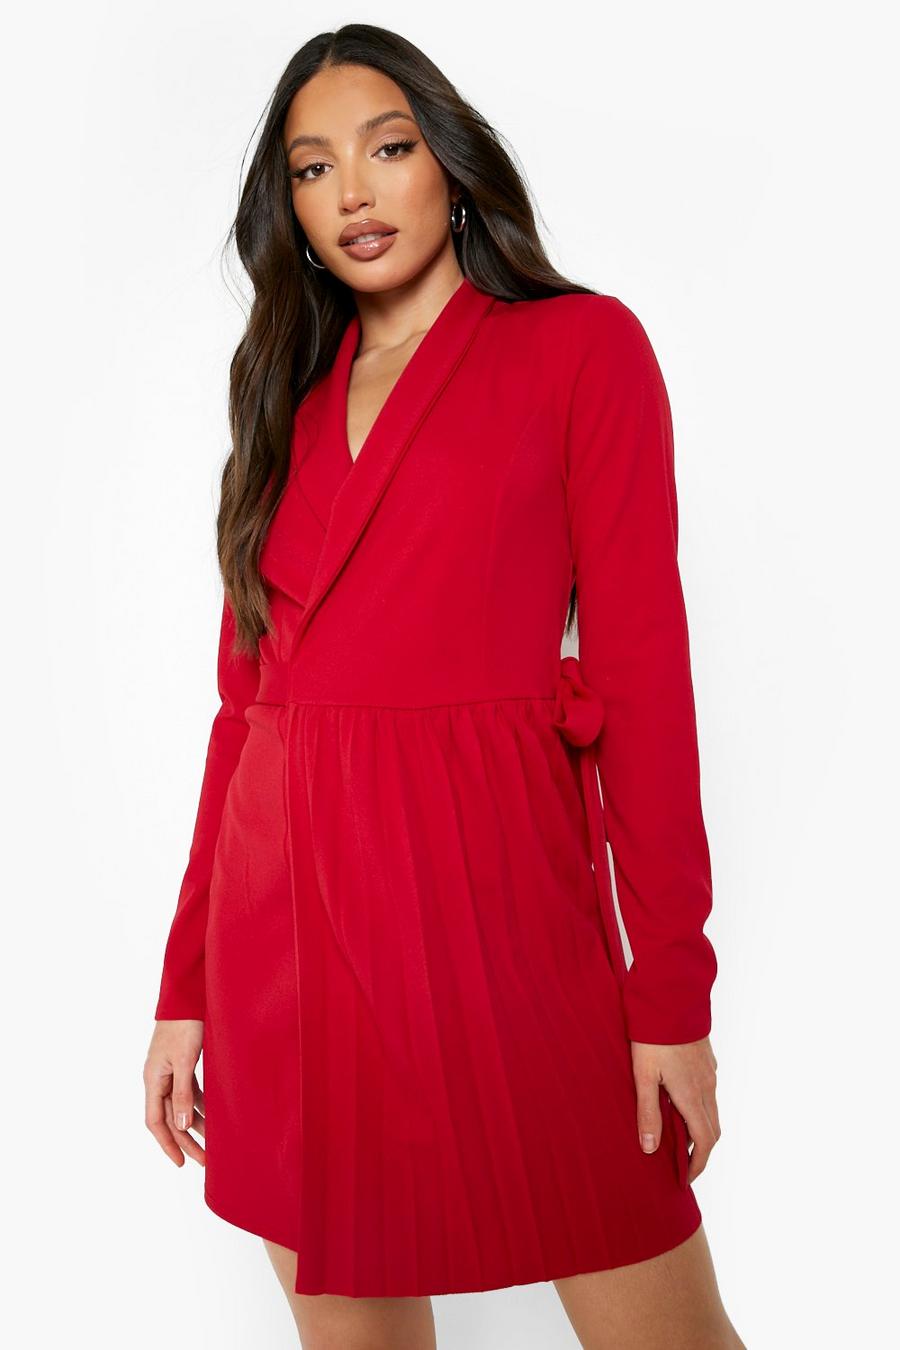 אדום שמלת בלייזר עם עיטור קפל, לנשים גבוהות image number 1